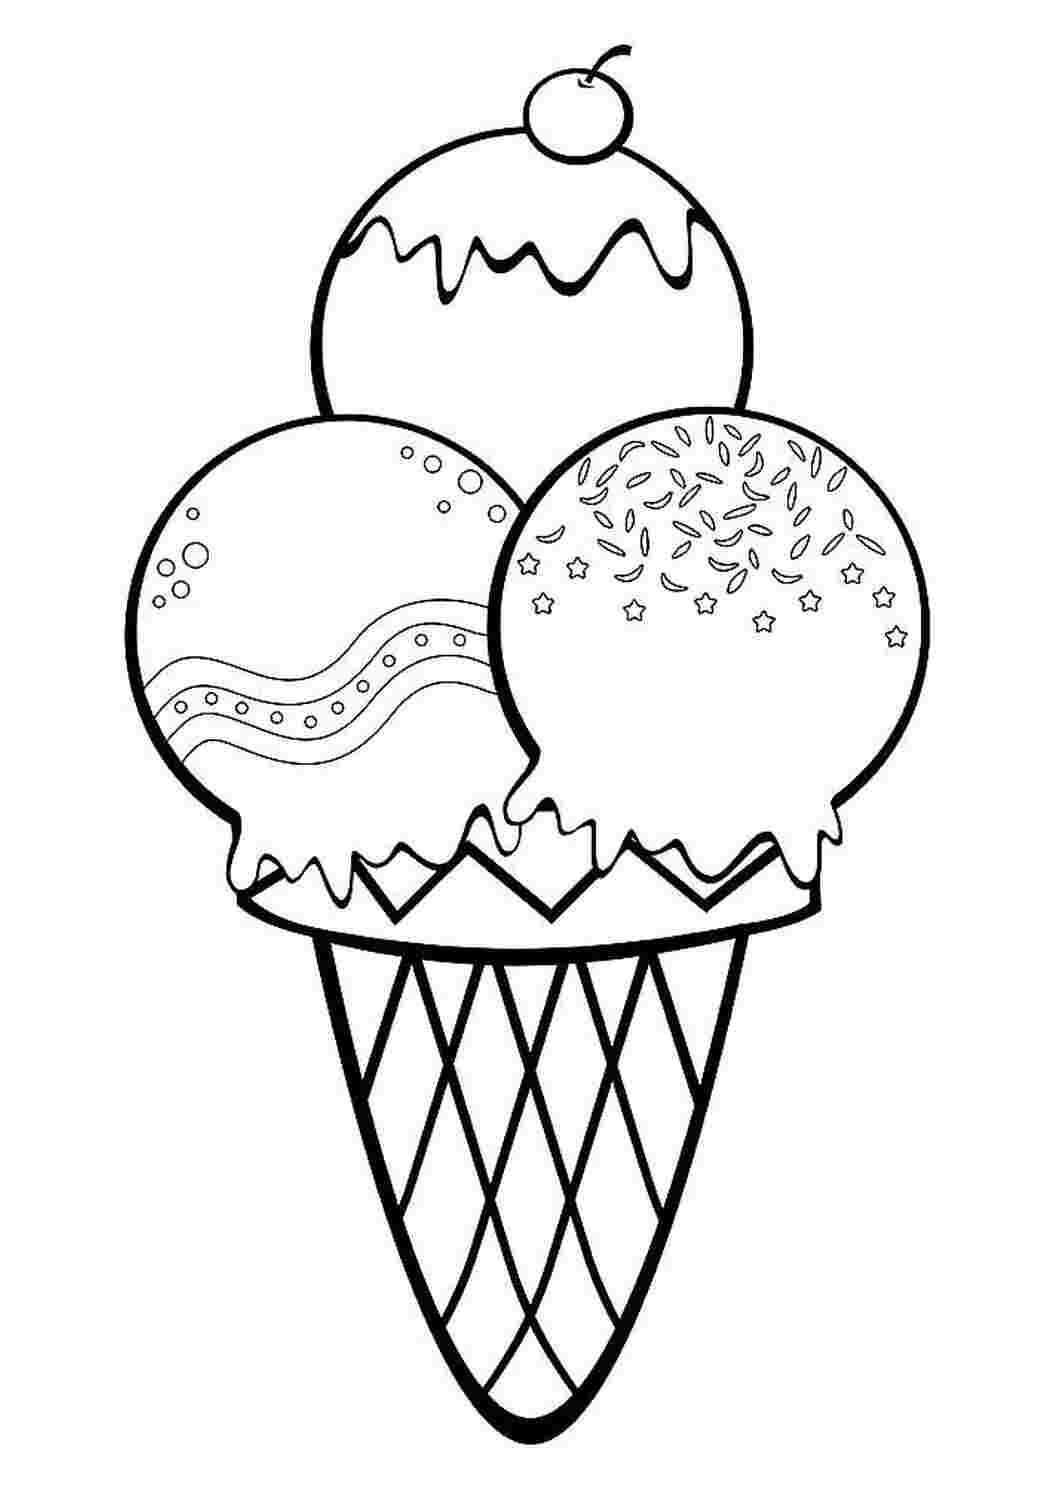 Раскраски раскраски с различным мороженым  мороженое из шариком и в рожках. изучаем вкусную полезную еду